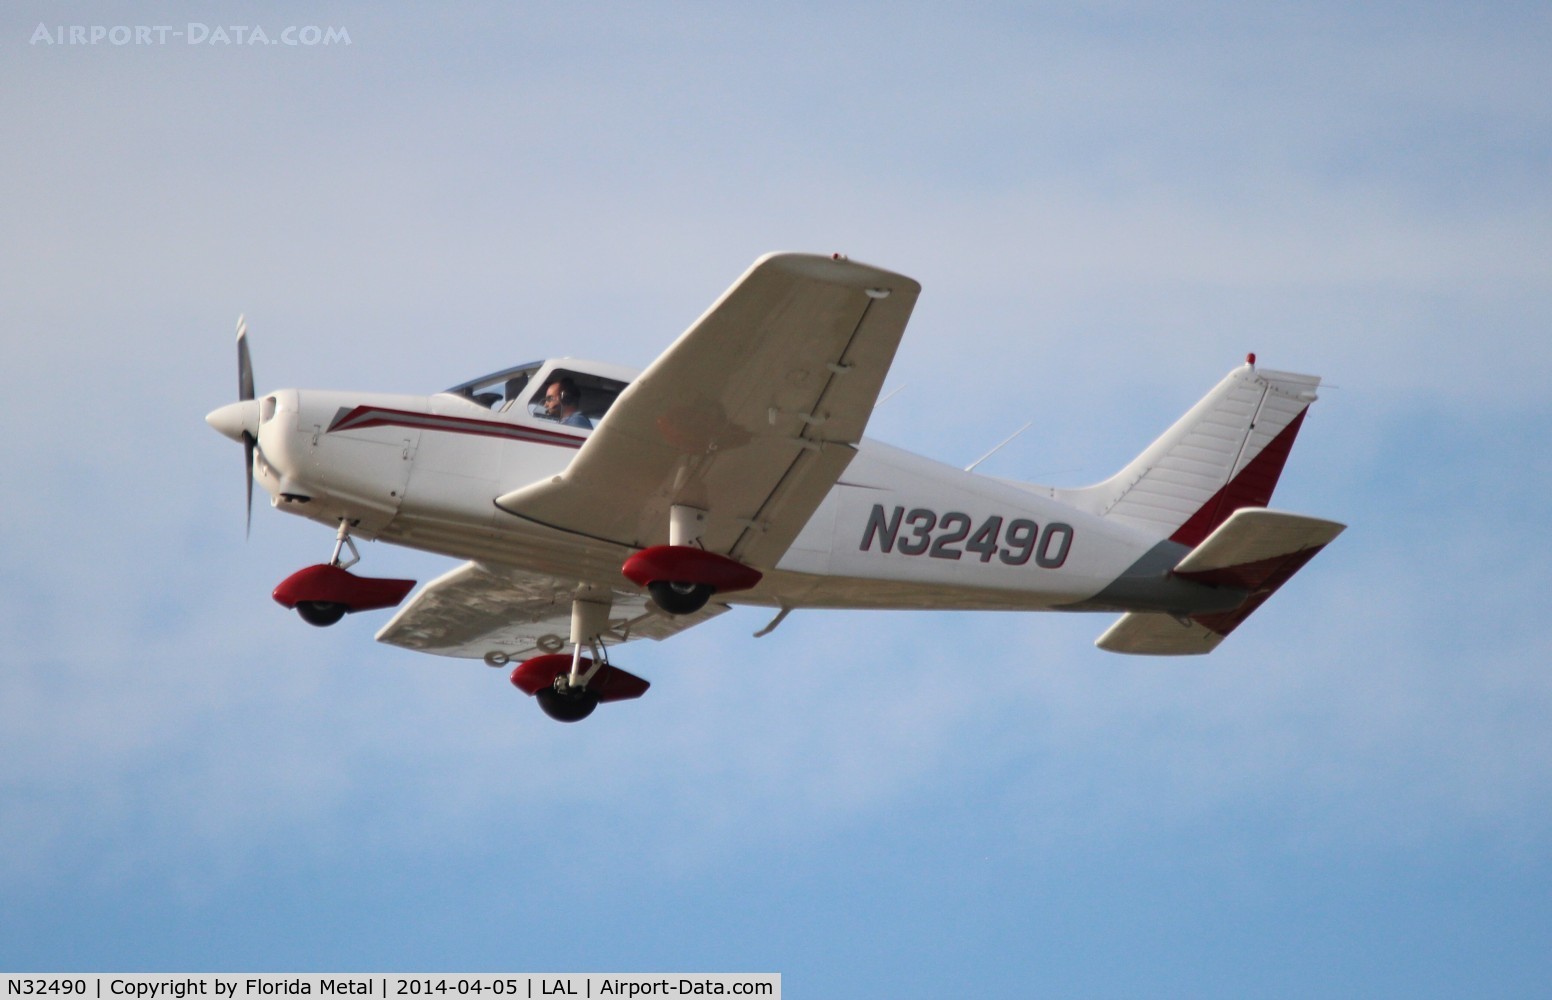 N32490, 1974 Piper PA-28-151 C/N 28-7515169, PA-28-151